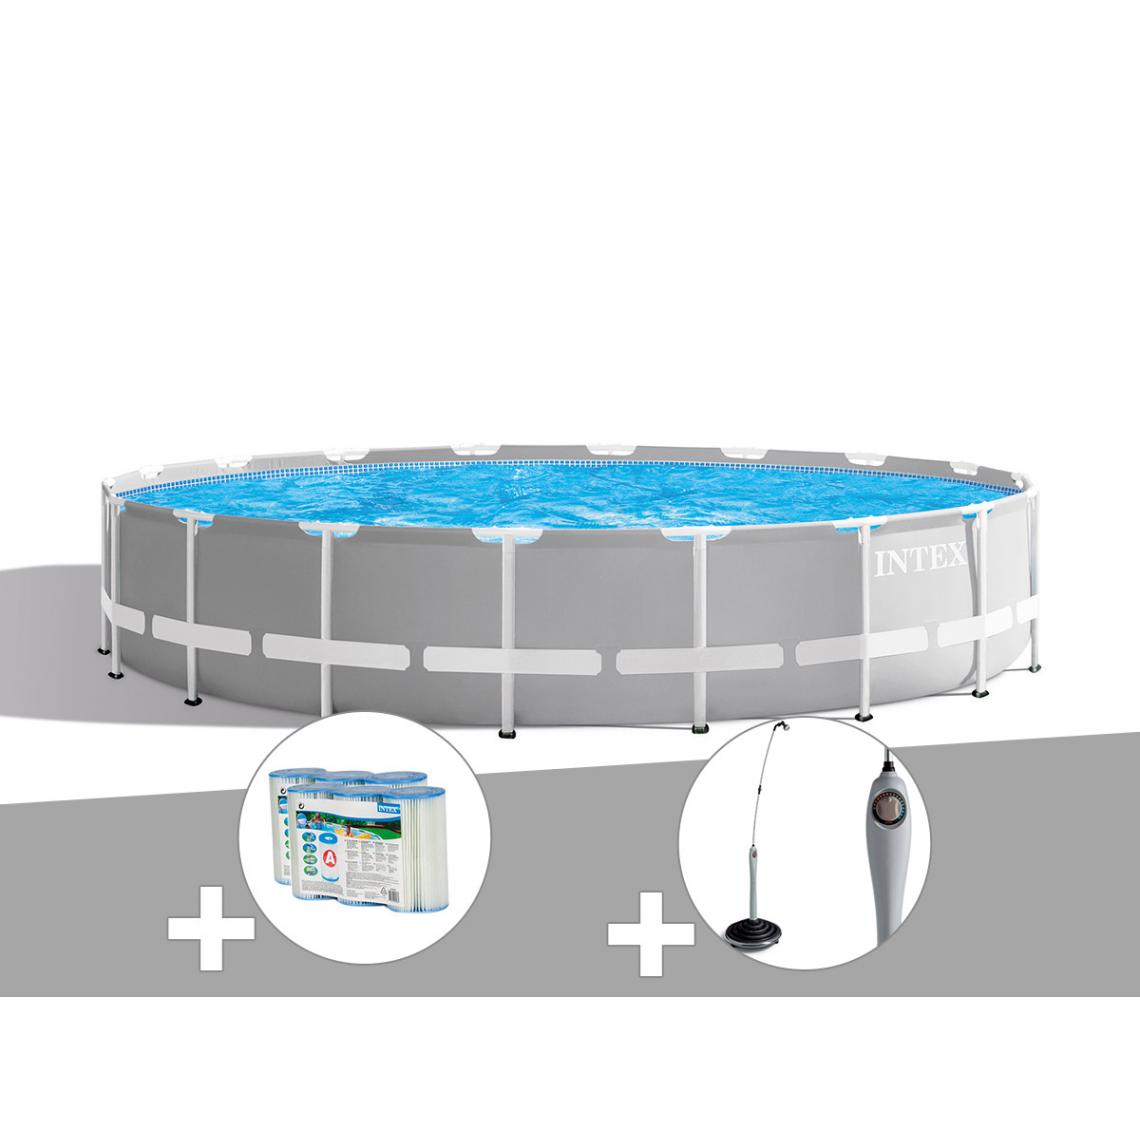 Intex - Kit piscine tubulaire Intex Prism Frame ronde 6,10 x 1,32 m + 6 cartouches de filtration + Douche solaire - Piscine Tubulaire